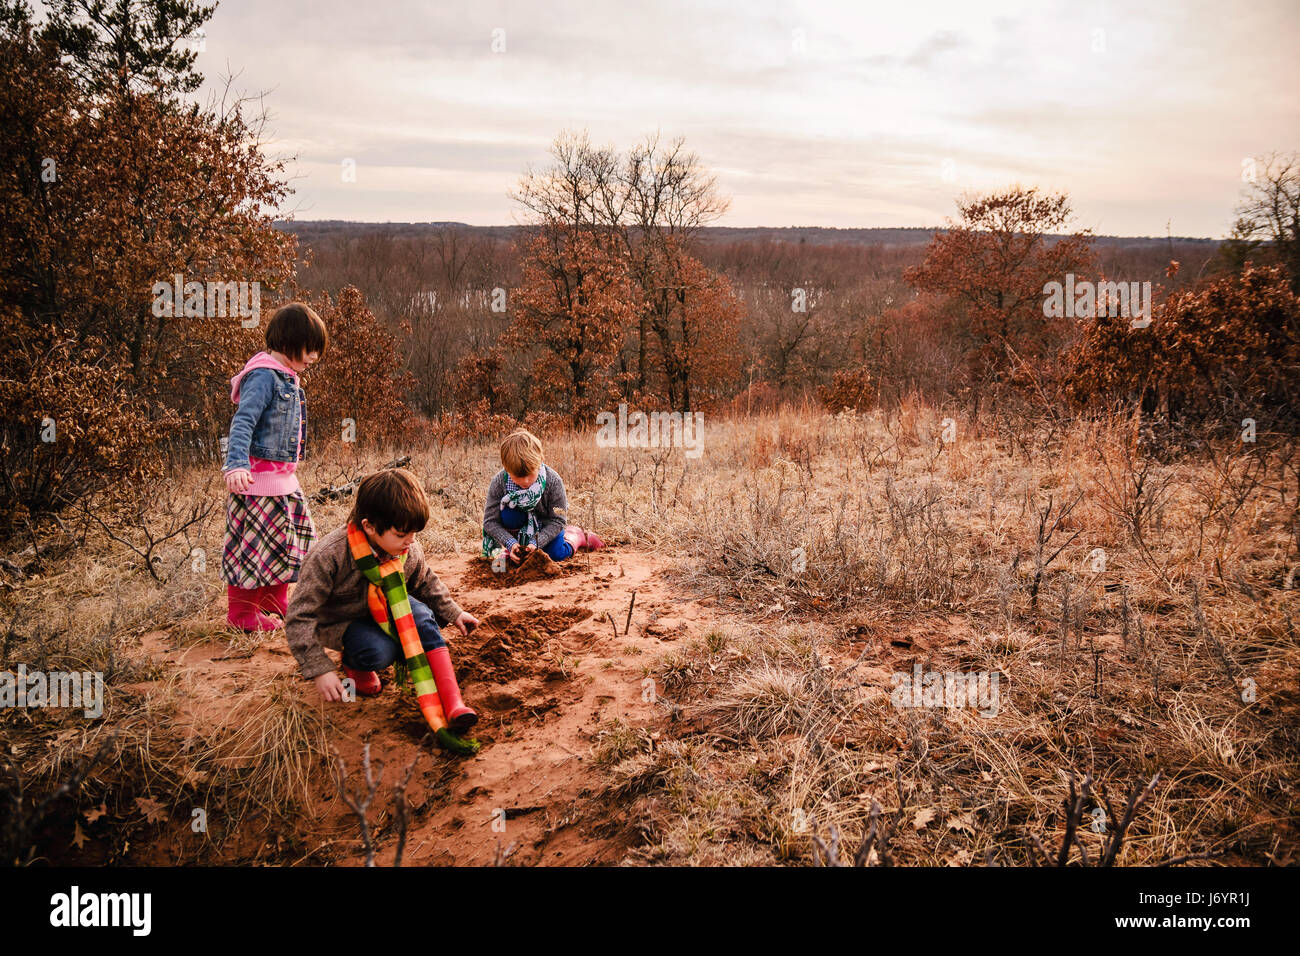 Deux garçons et une fille jouant dans un paysage rural Banque D'Images